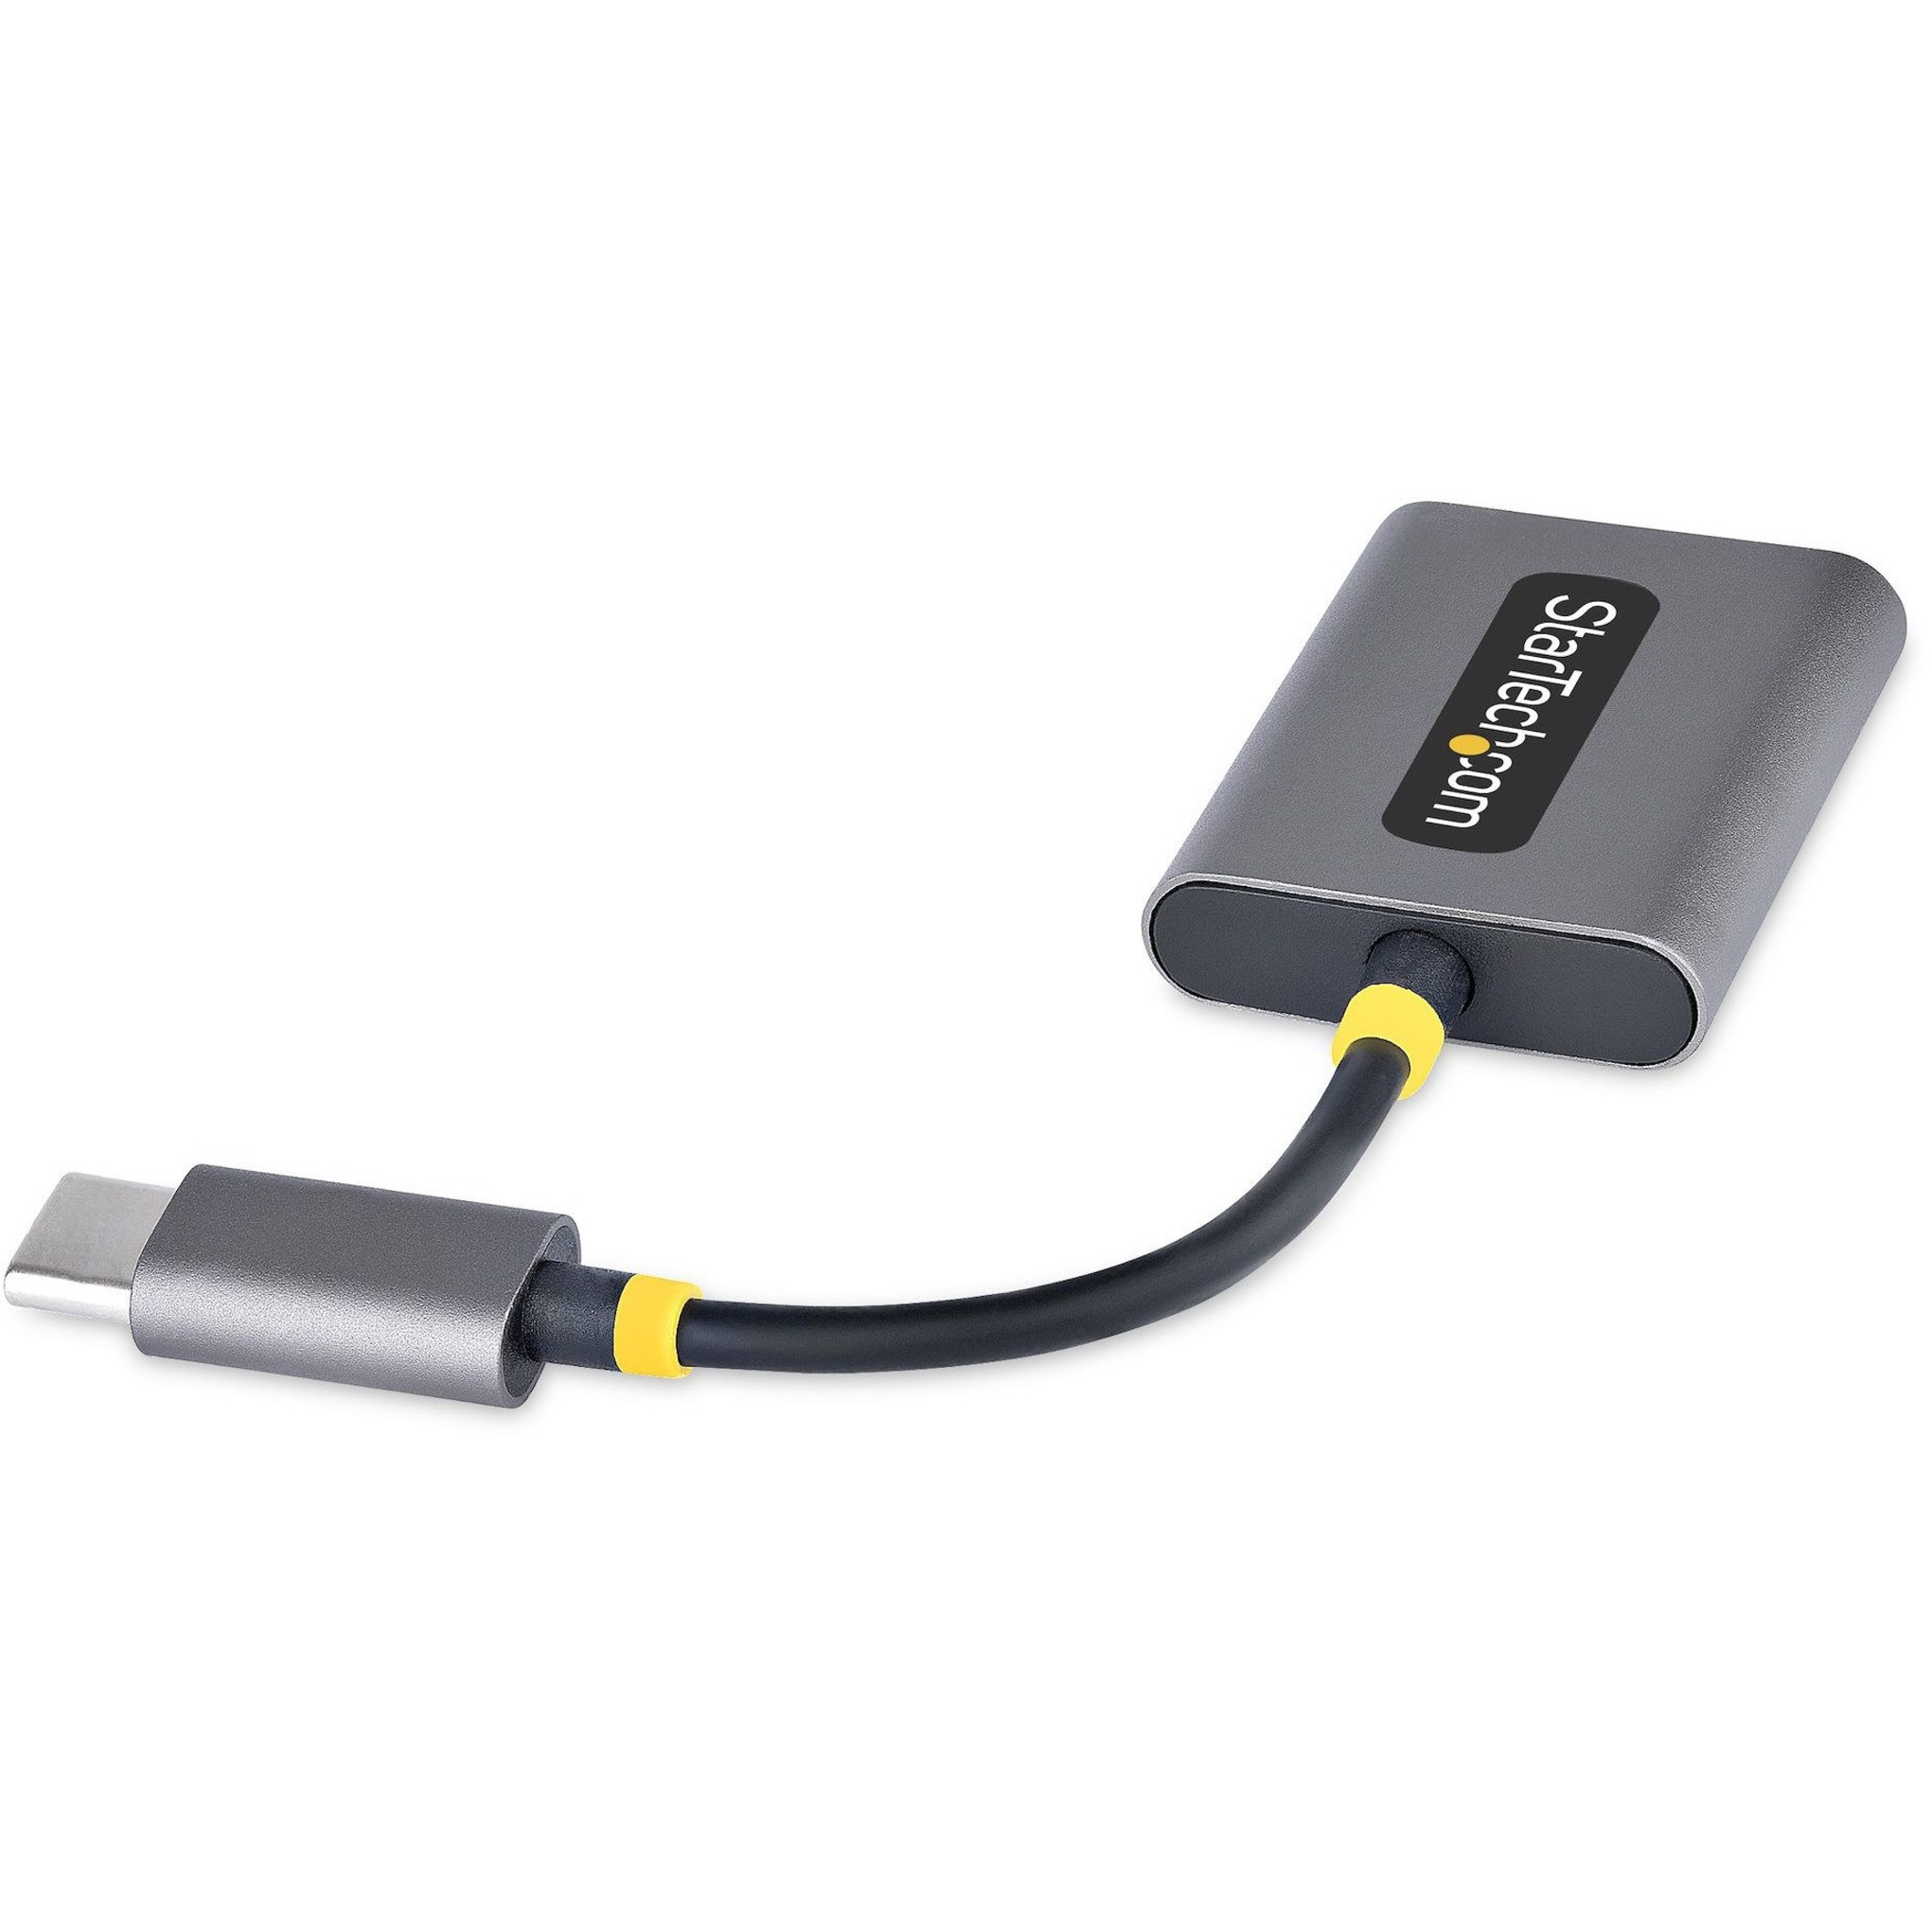 Double Adaptateur USB C Audio, Type C Audio Chargeur Adaptateur